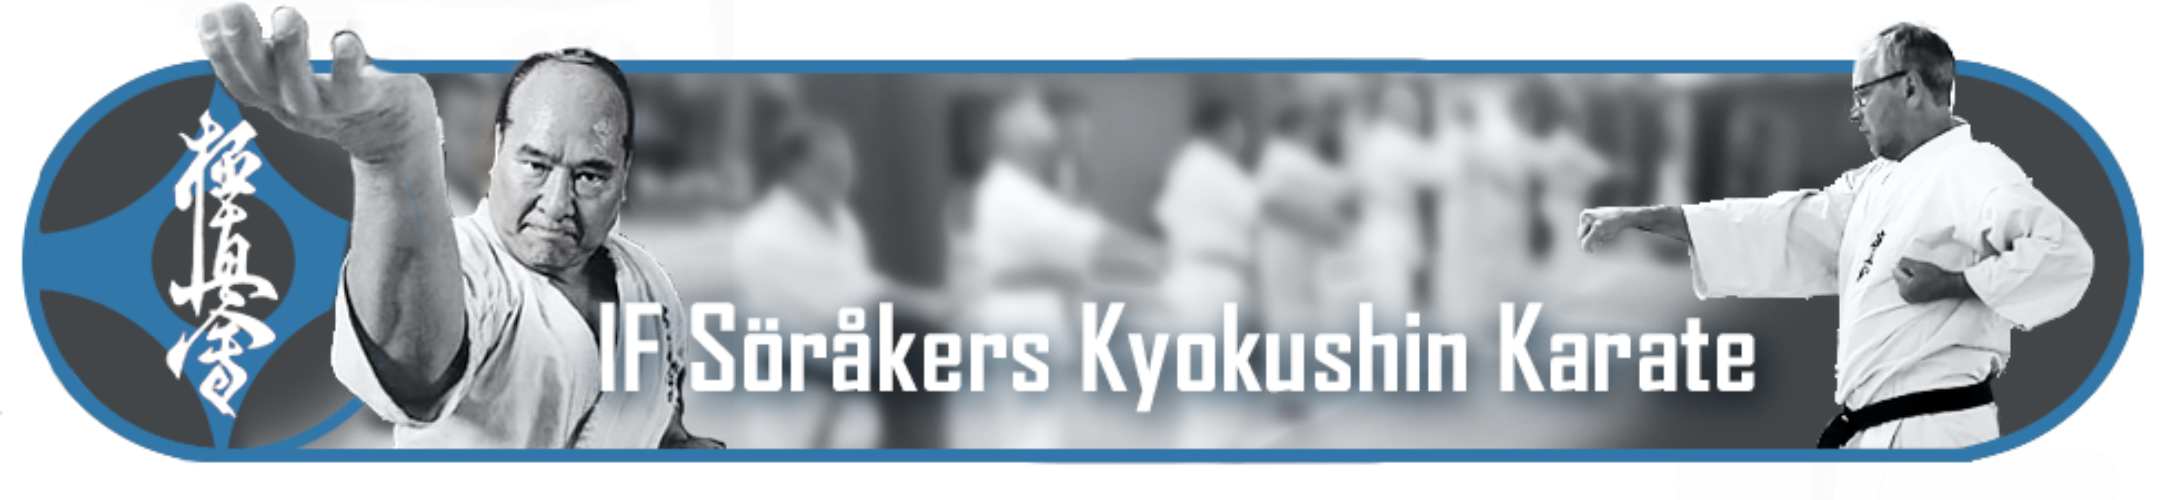 banner till karate hemsidan2